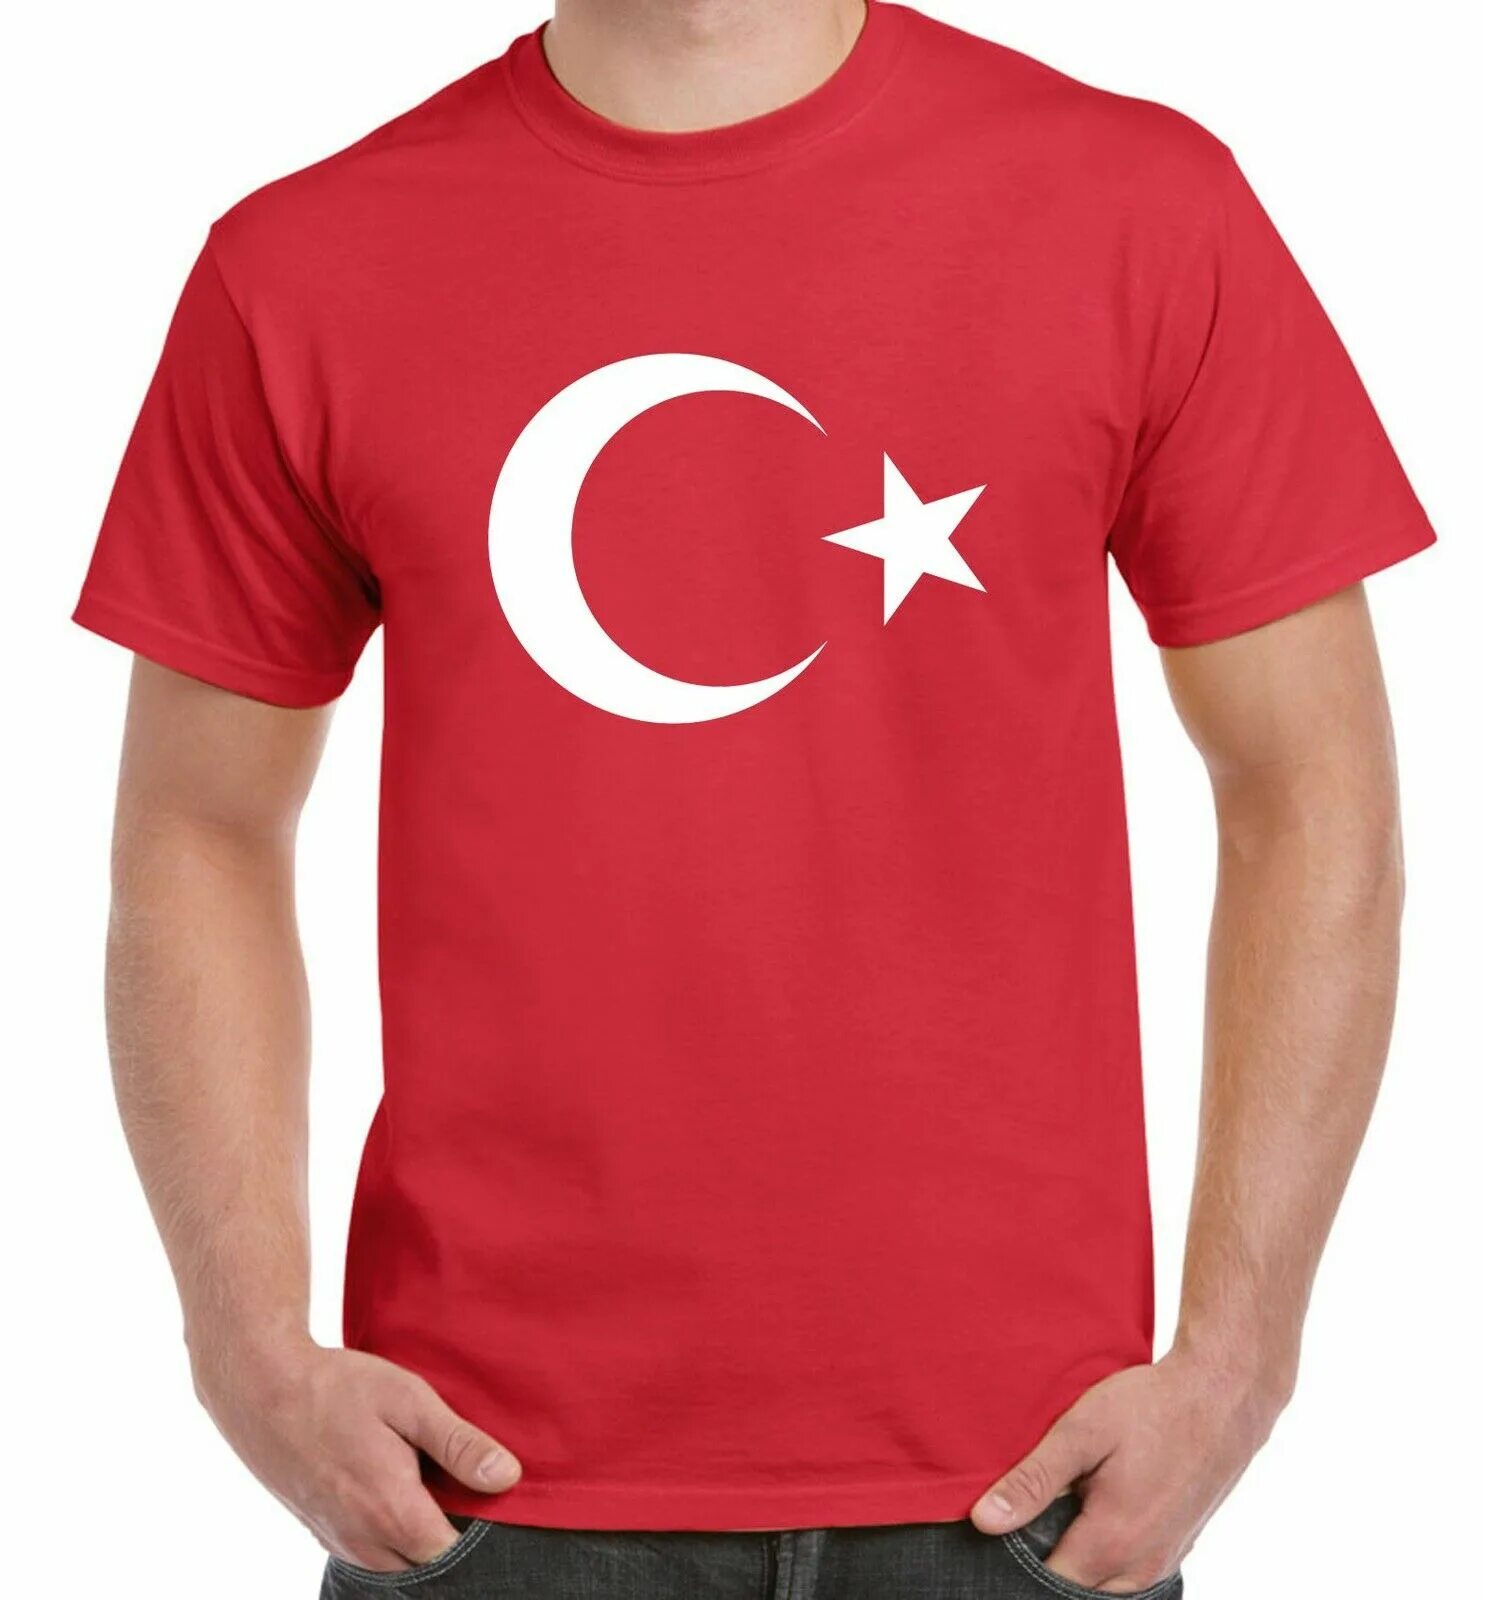 Футболка с турецким флагом. Турецкие футболки мужские. Турецкий футболки мужские с флагом. Майка с турецким флагом. Флаг майка